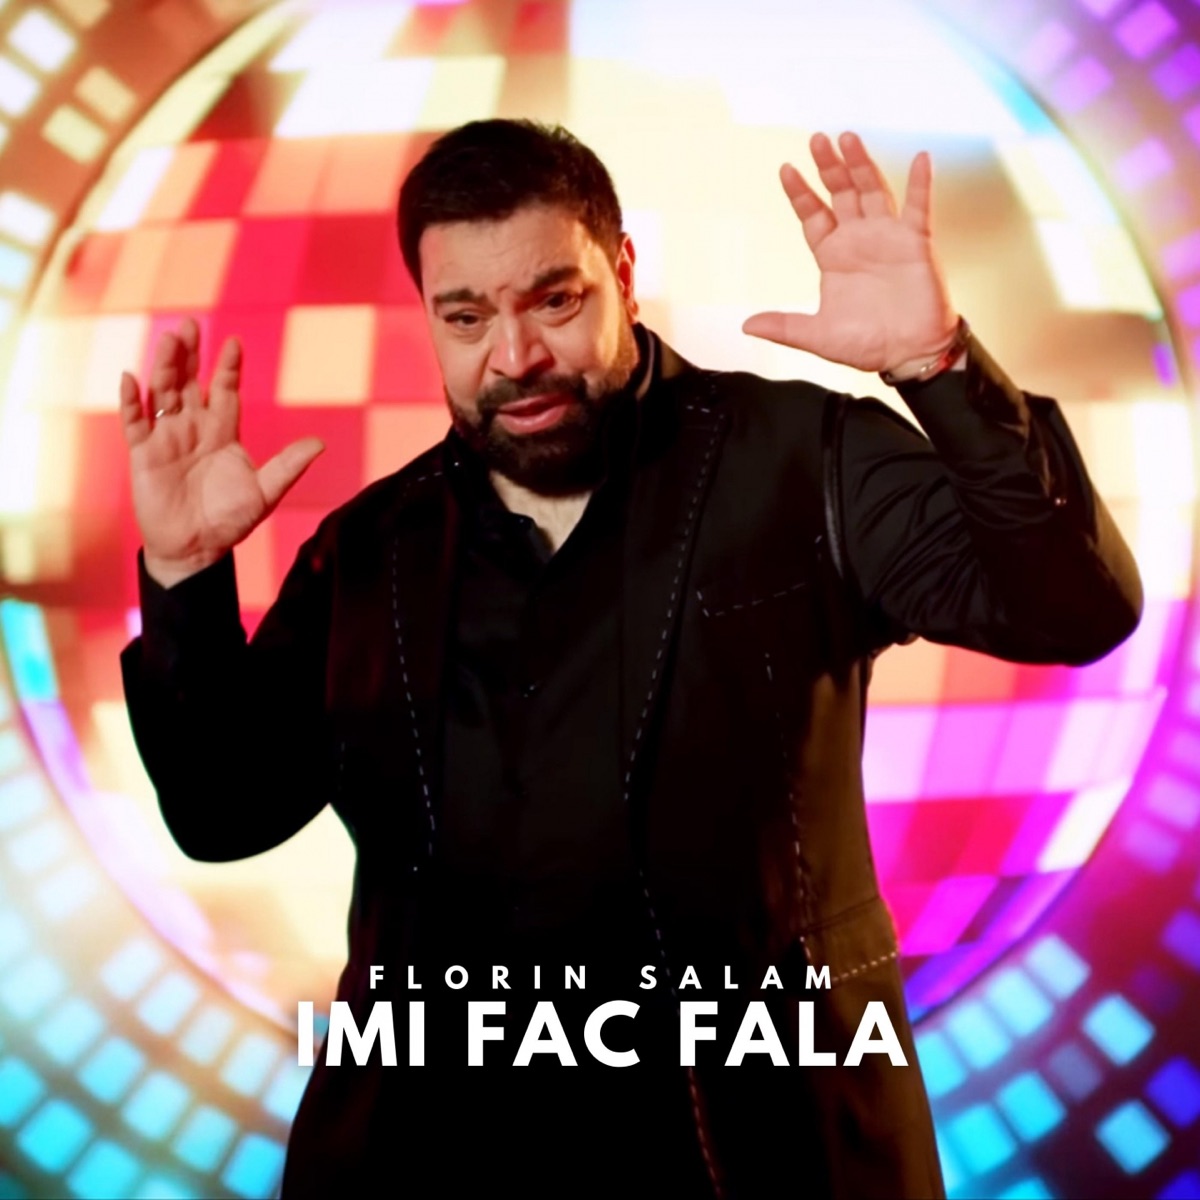 La multi ani - Single by Florin Salam on Apple Music